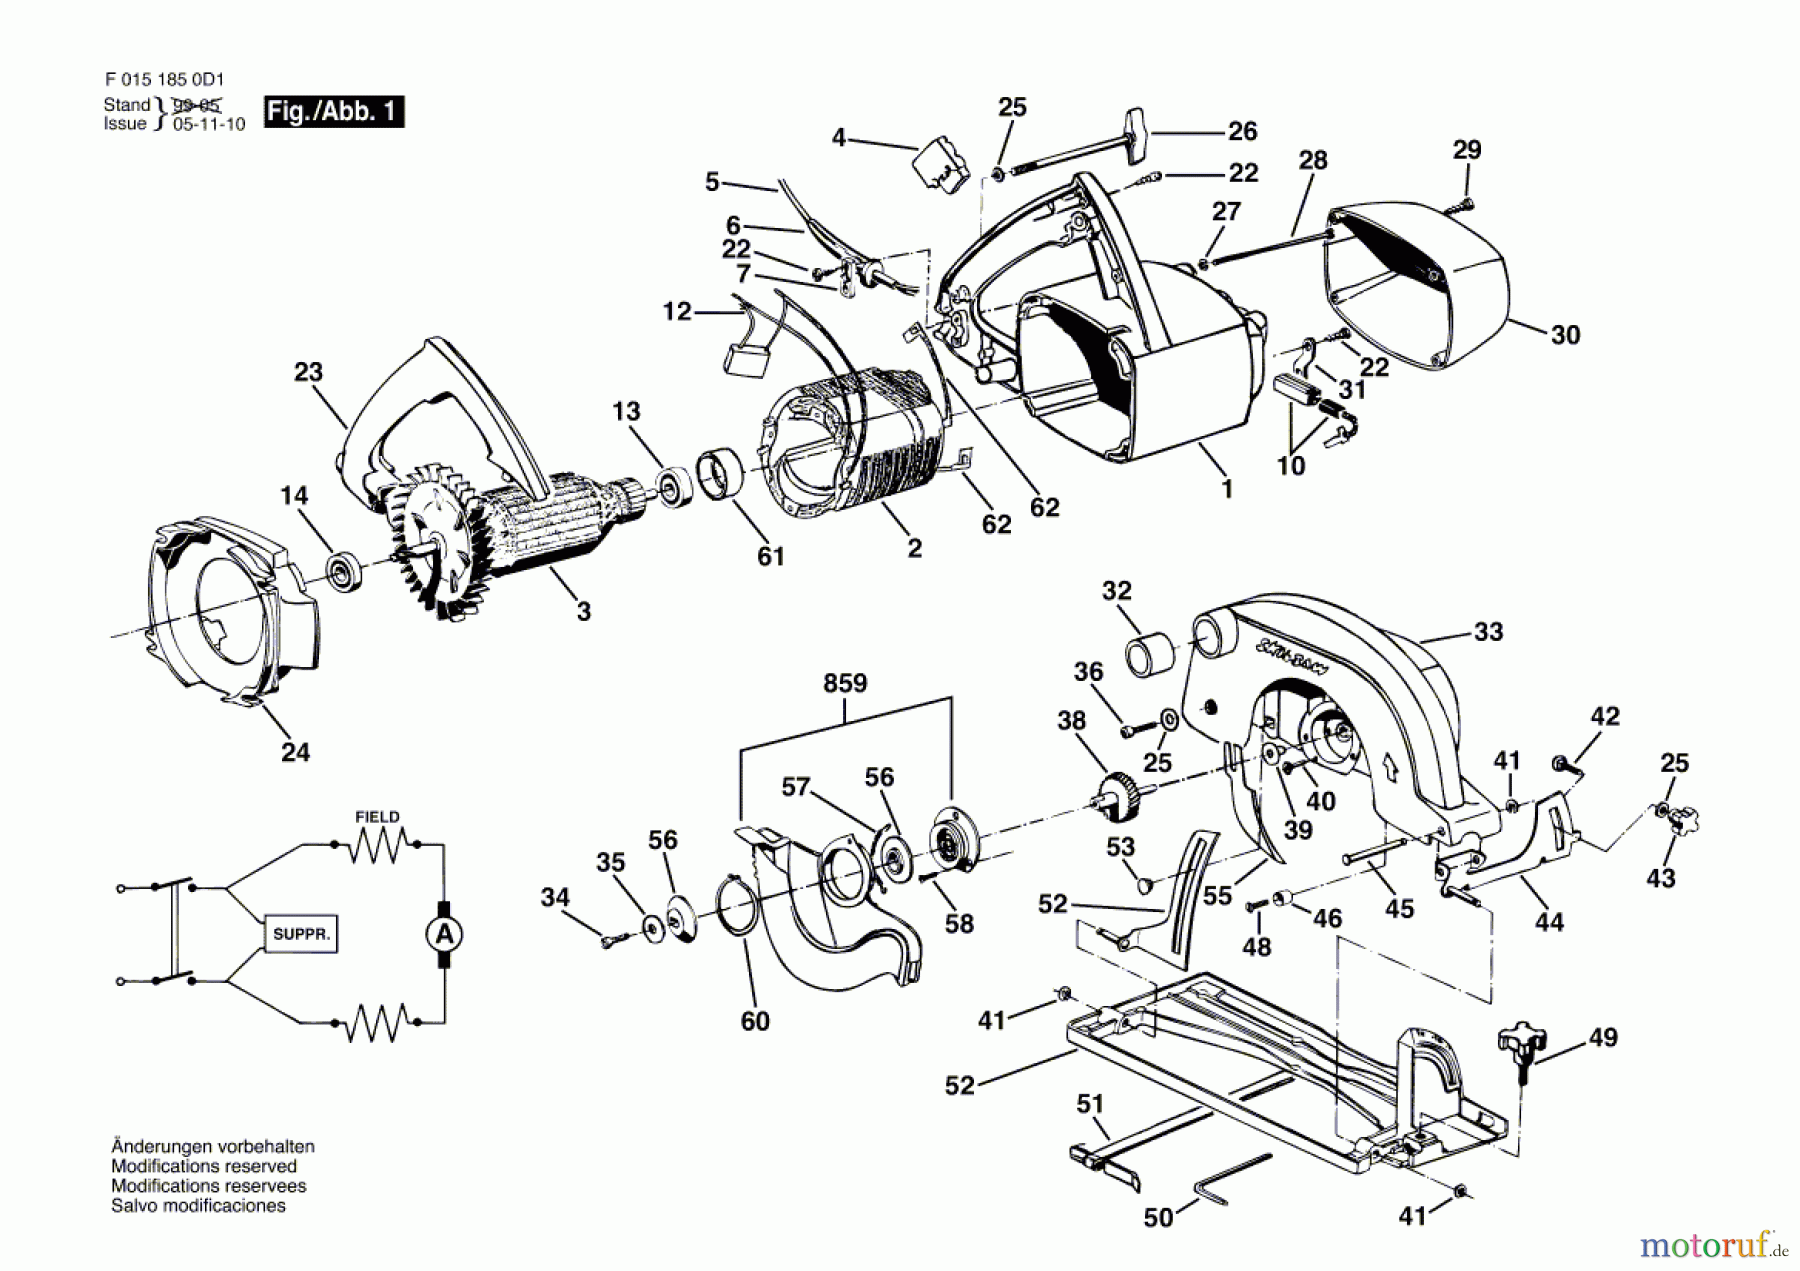  Bosch Werkzeug Handkreissäge 1850H1 Seite 1